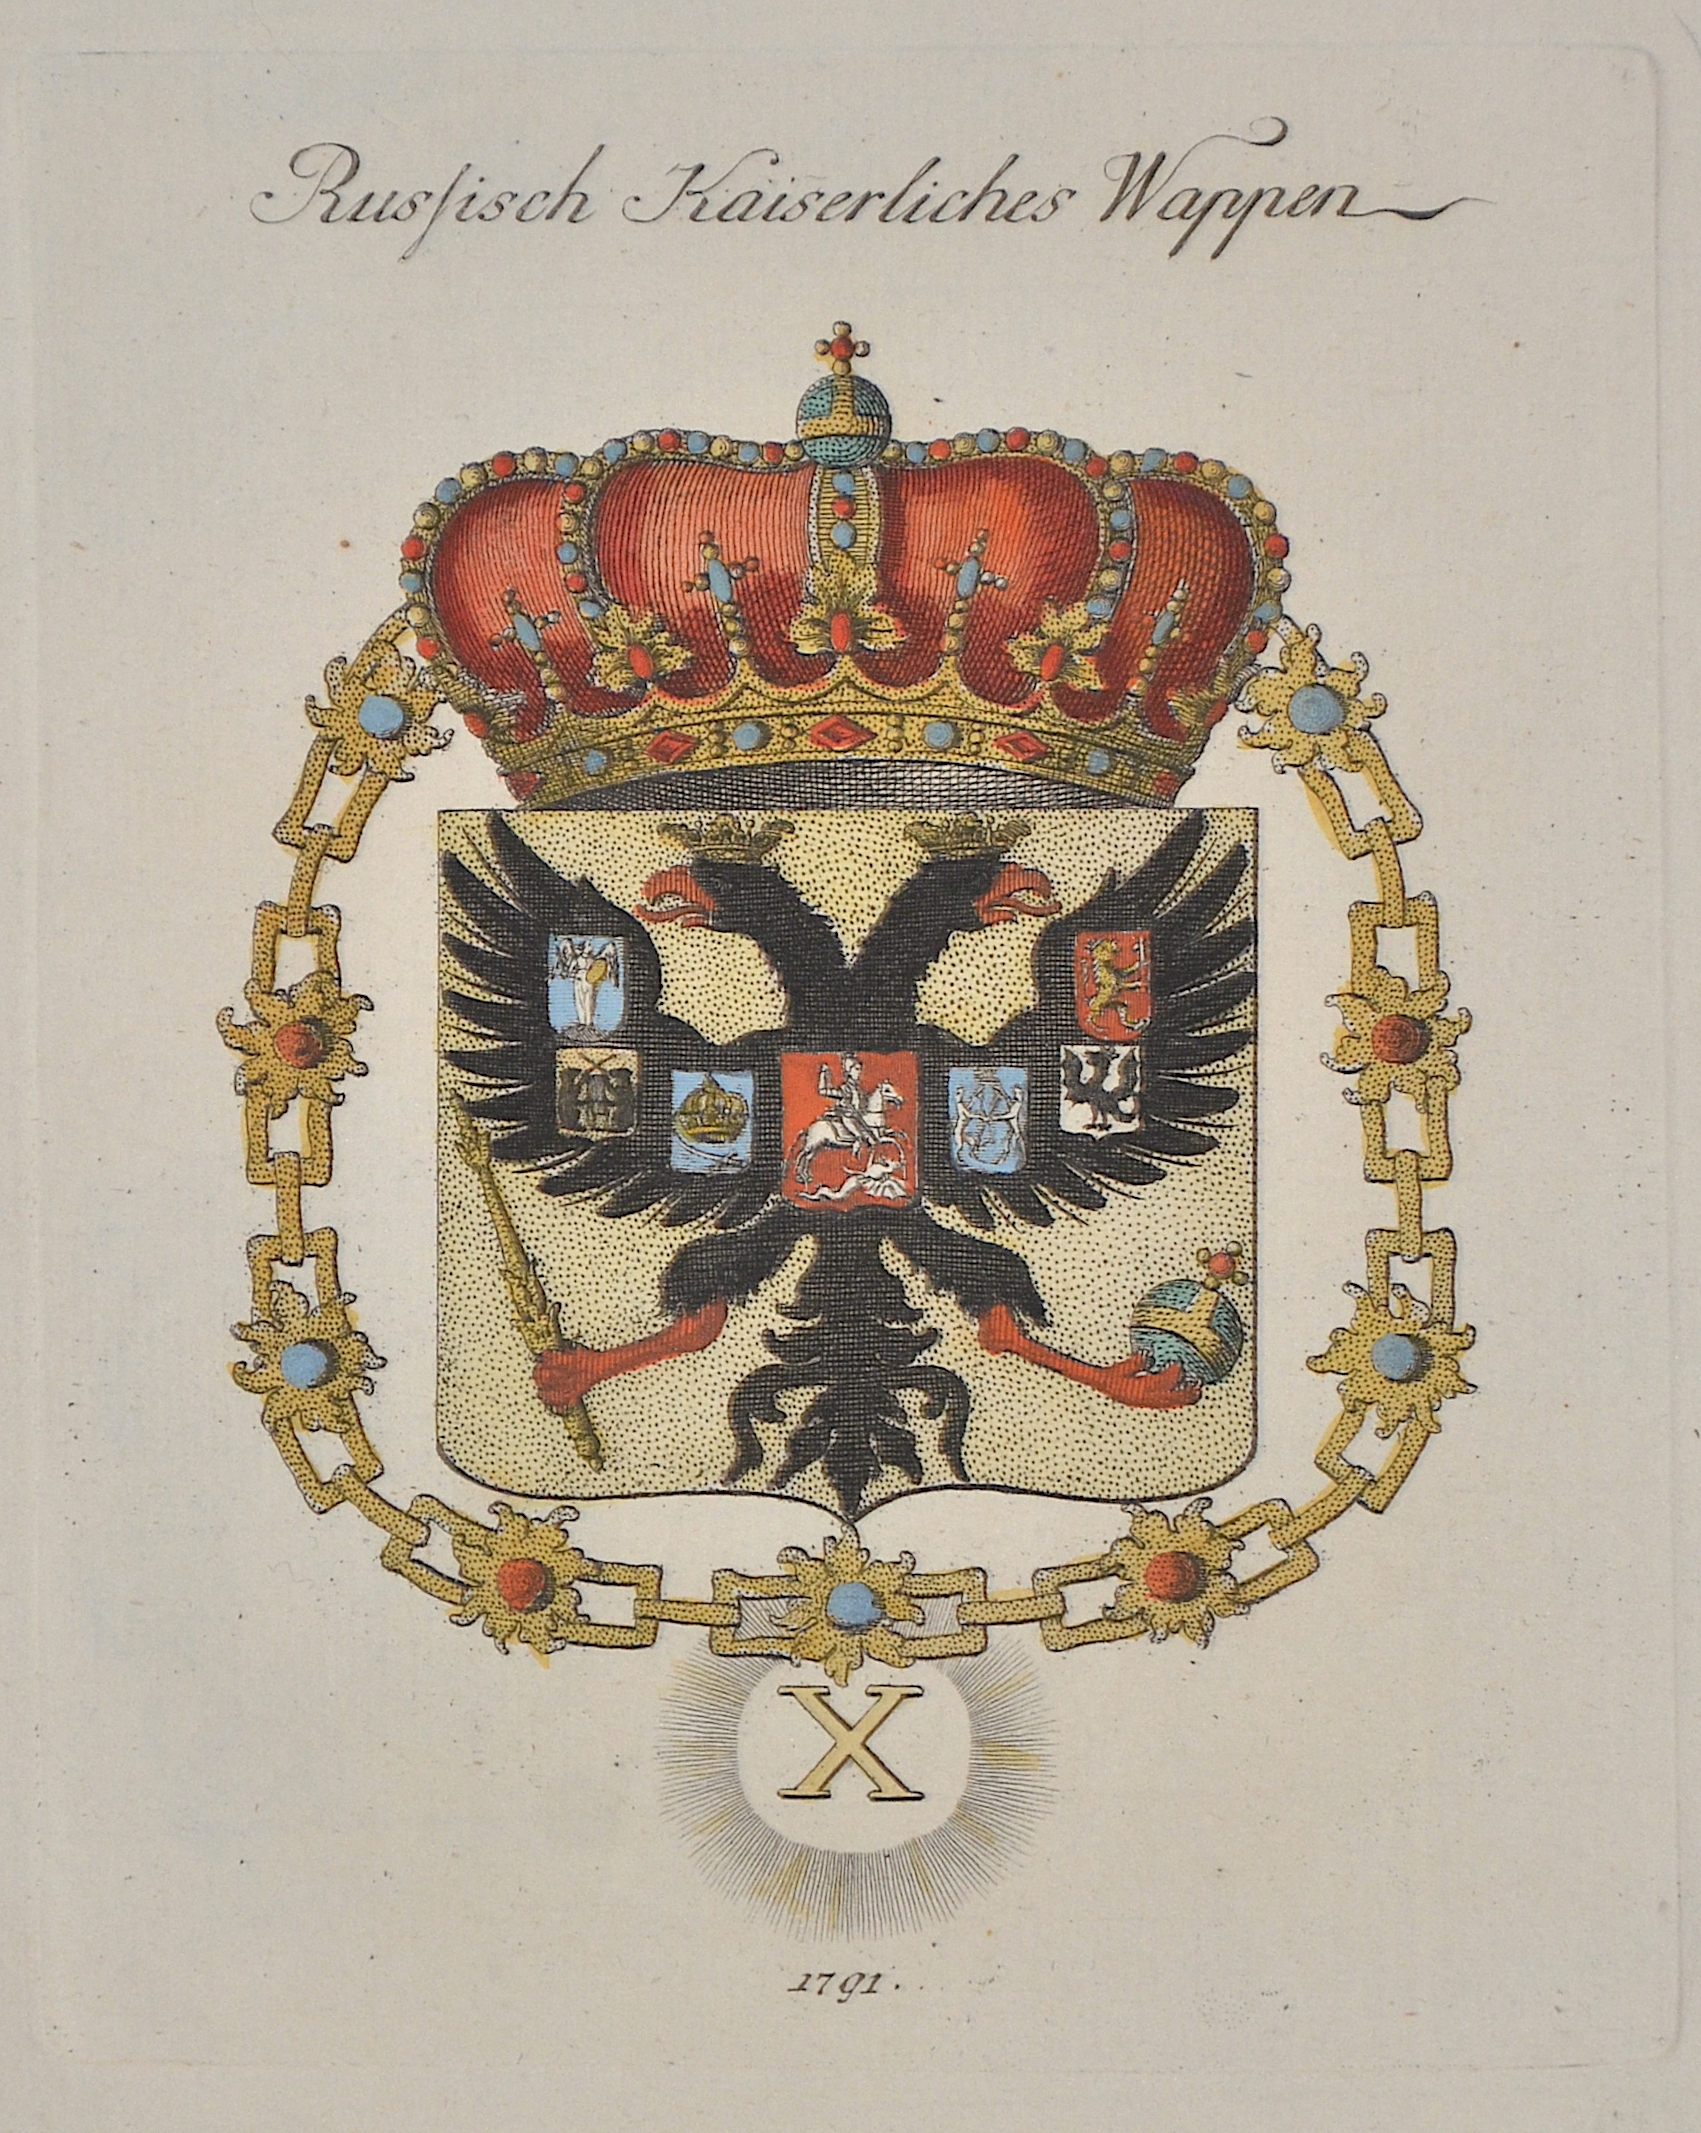 Anonymus  Russisch Kaiserliches Wappen 1791.